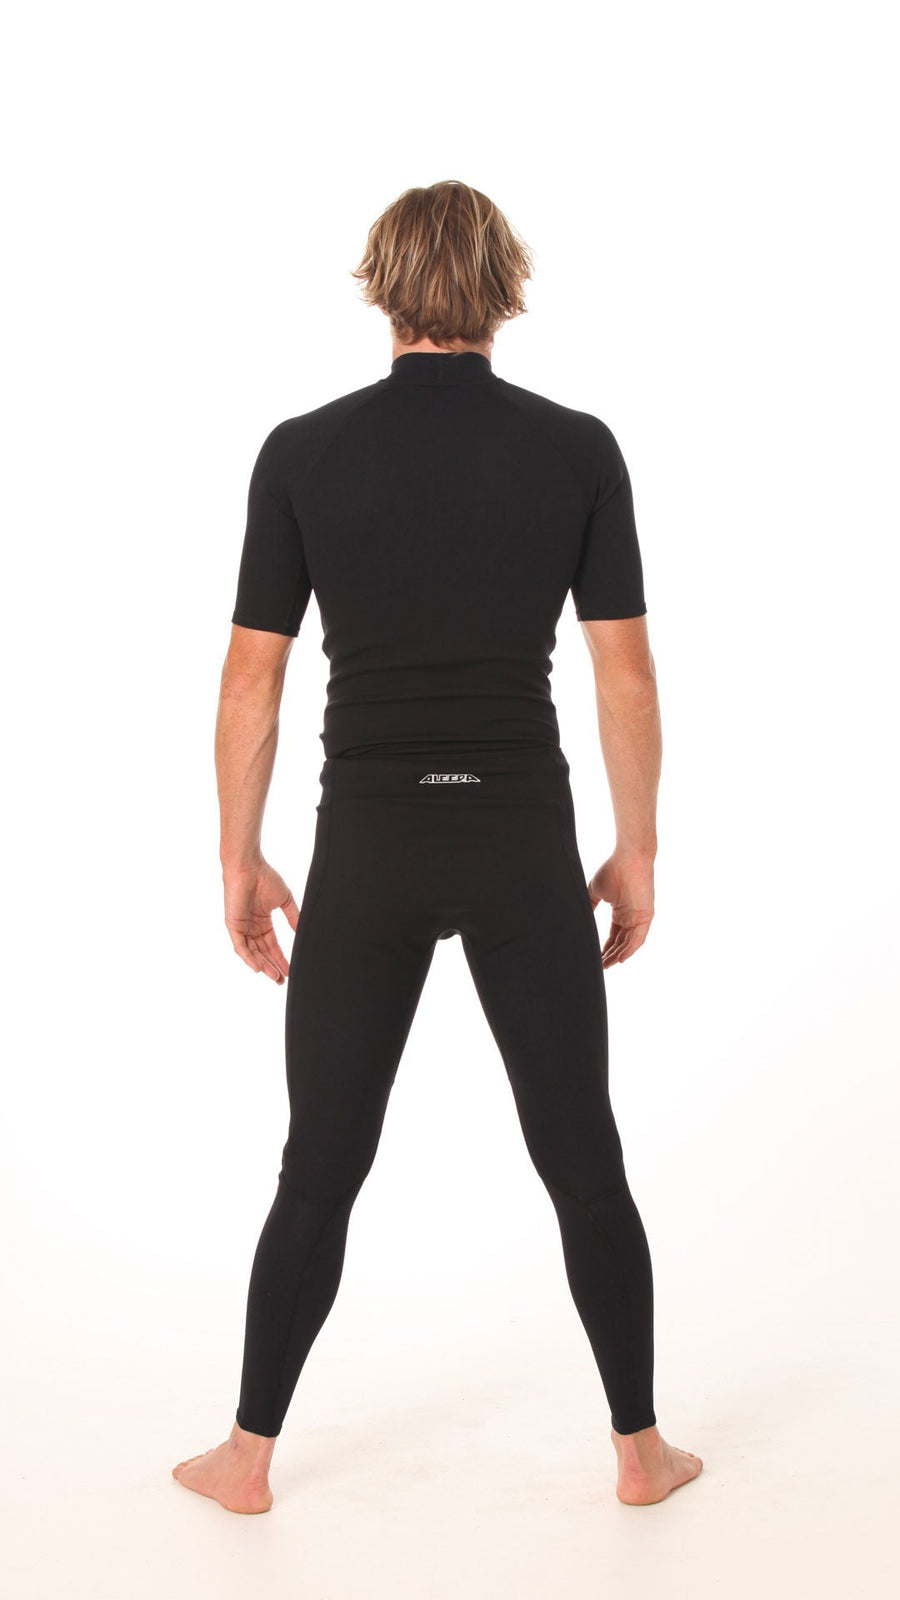 Wetsuit Pants, long, 2mm, Mens, Adult - back